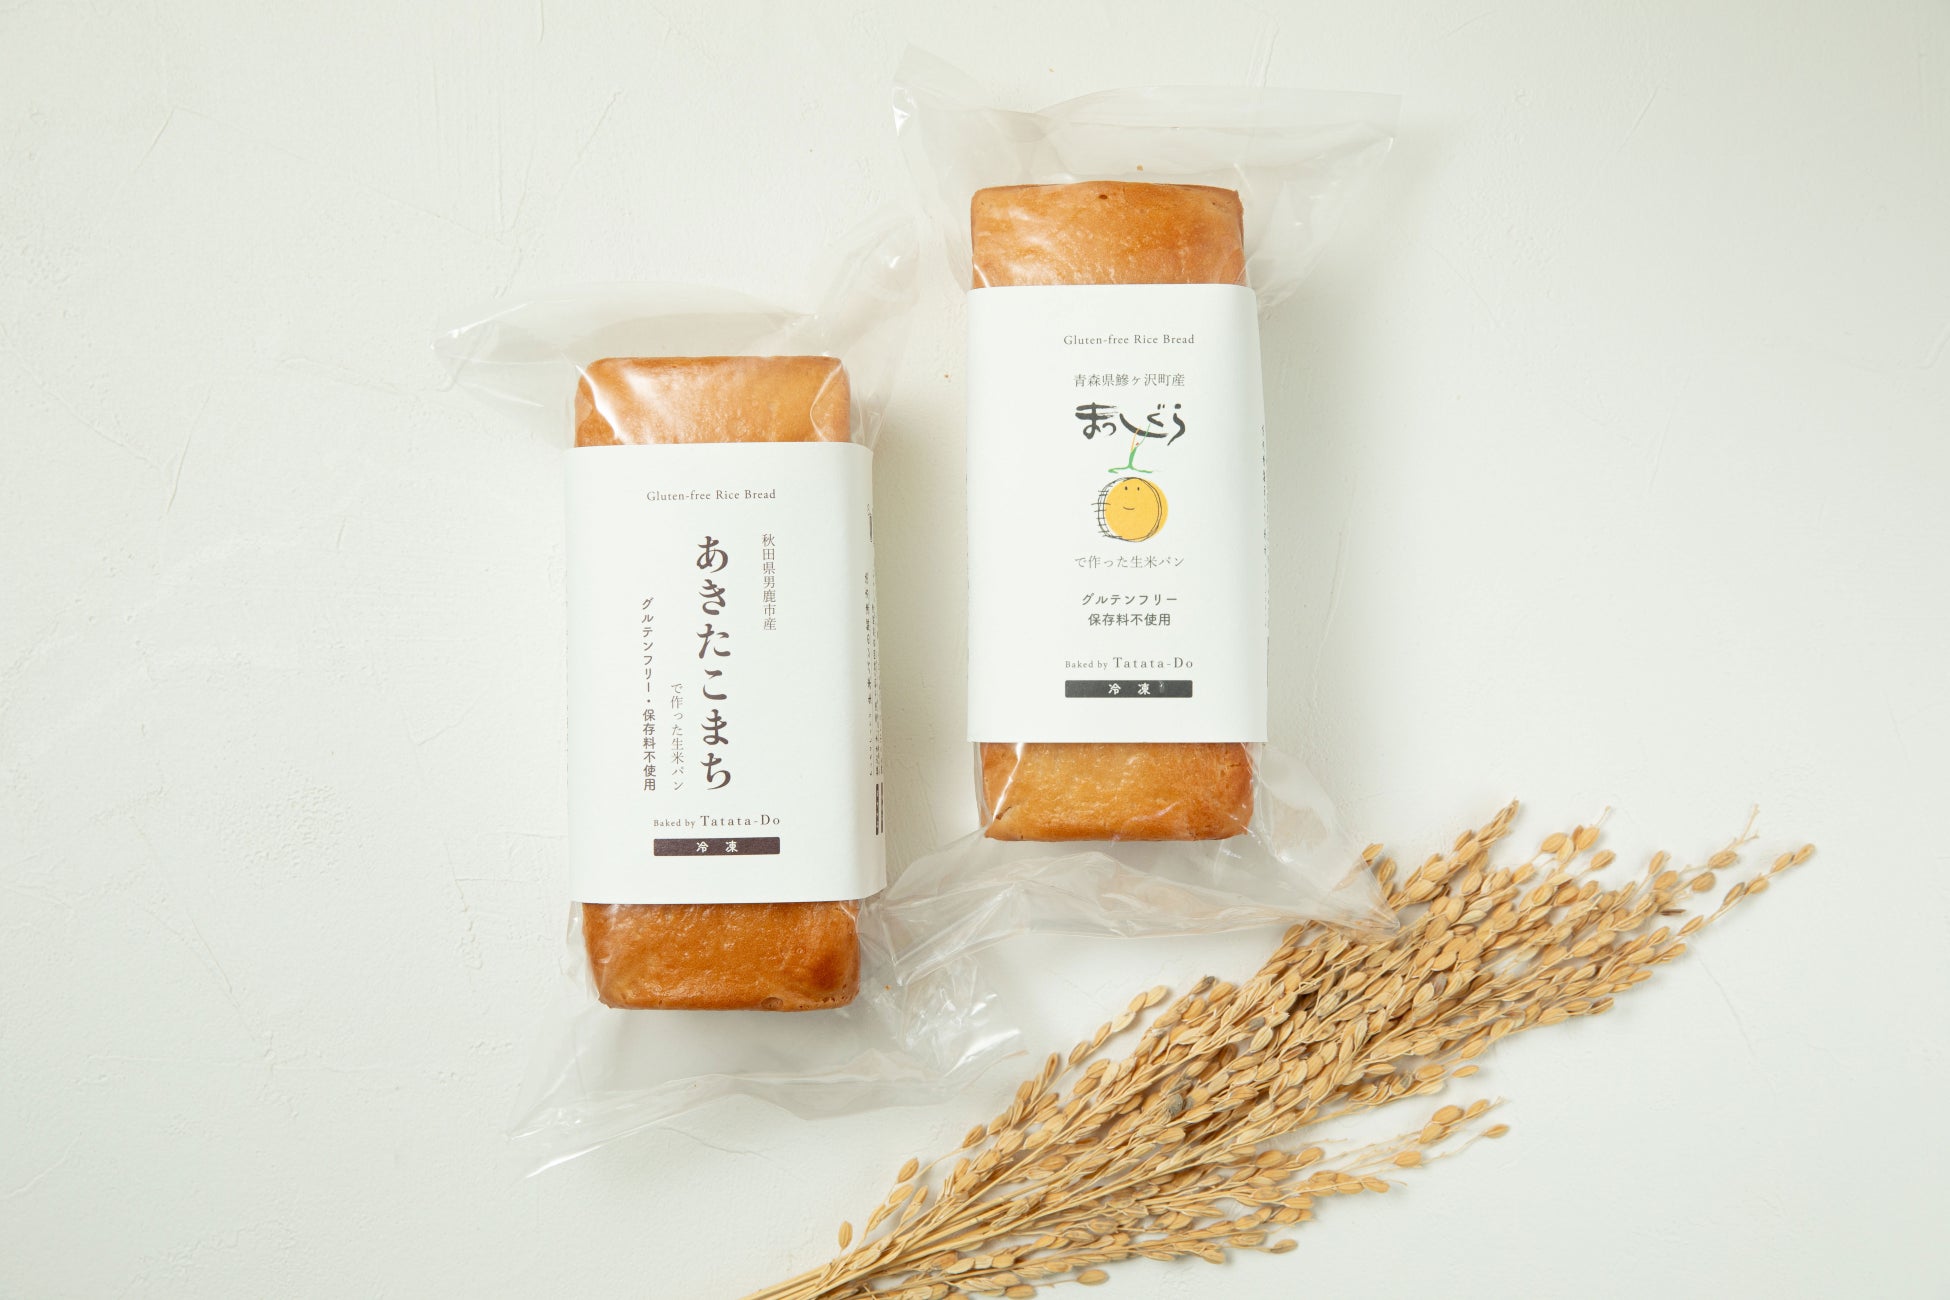 神戸「田田田堂」| 青森・秋田のブランド米でつくる「生米パン」で、地域の魅力アピールと米農家応援へ